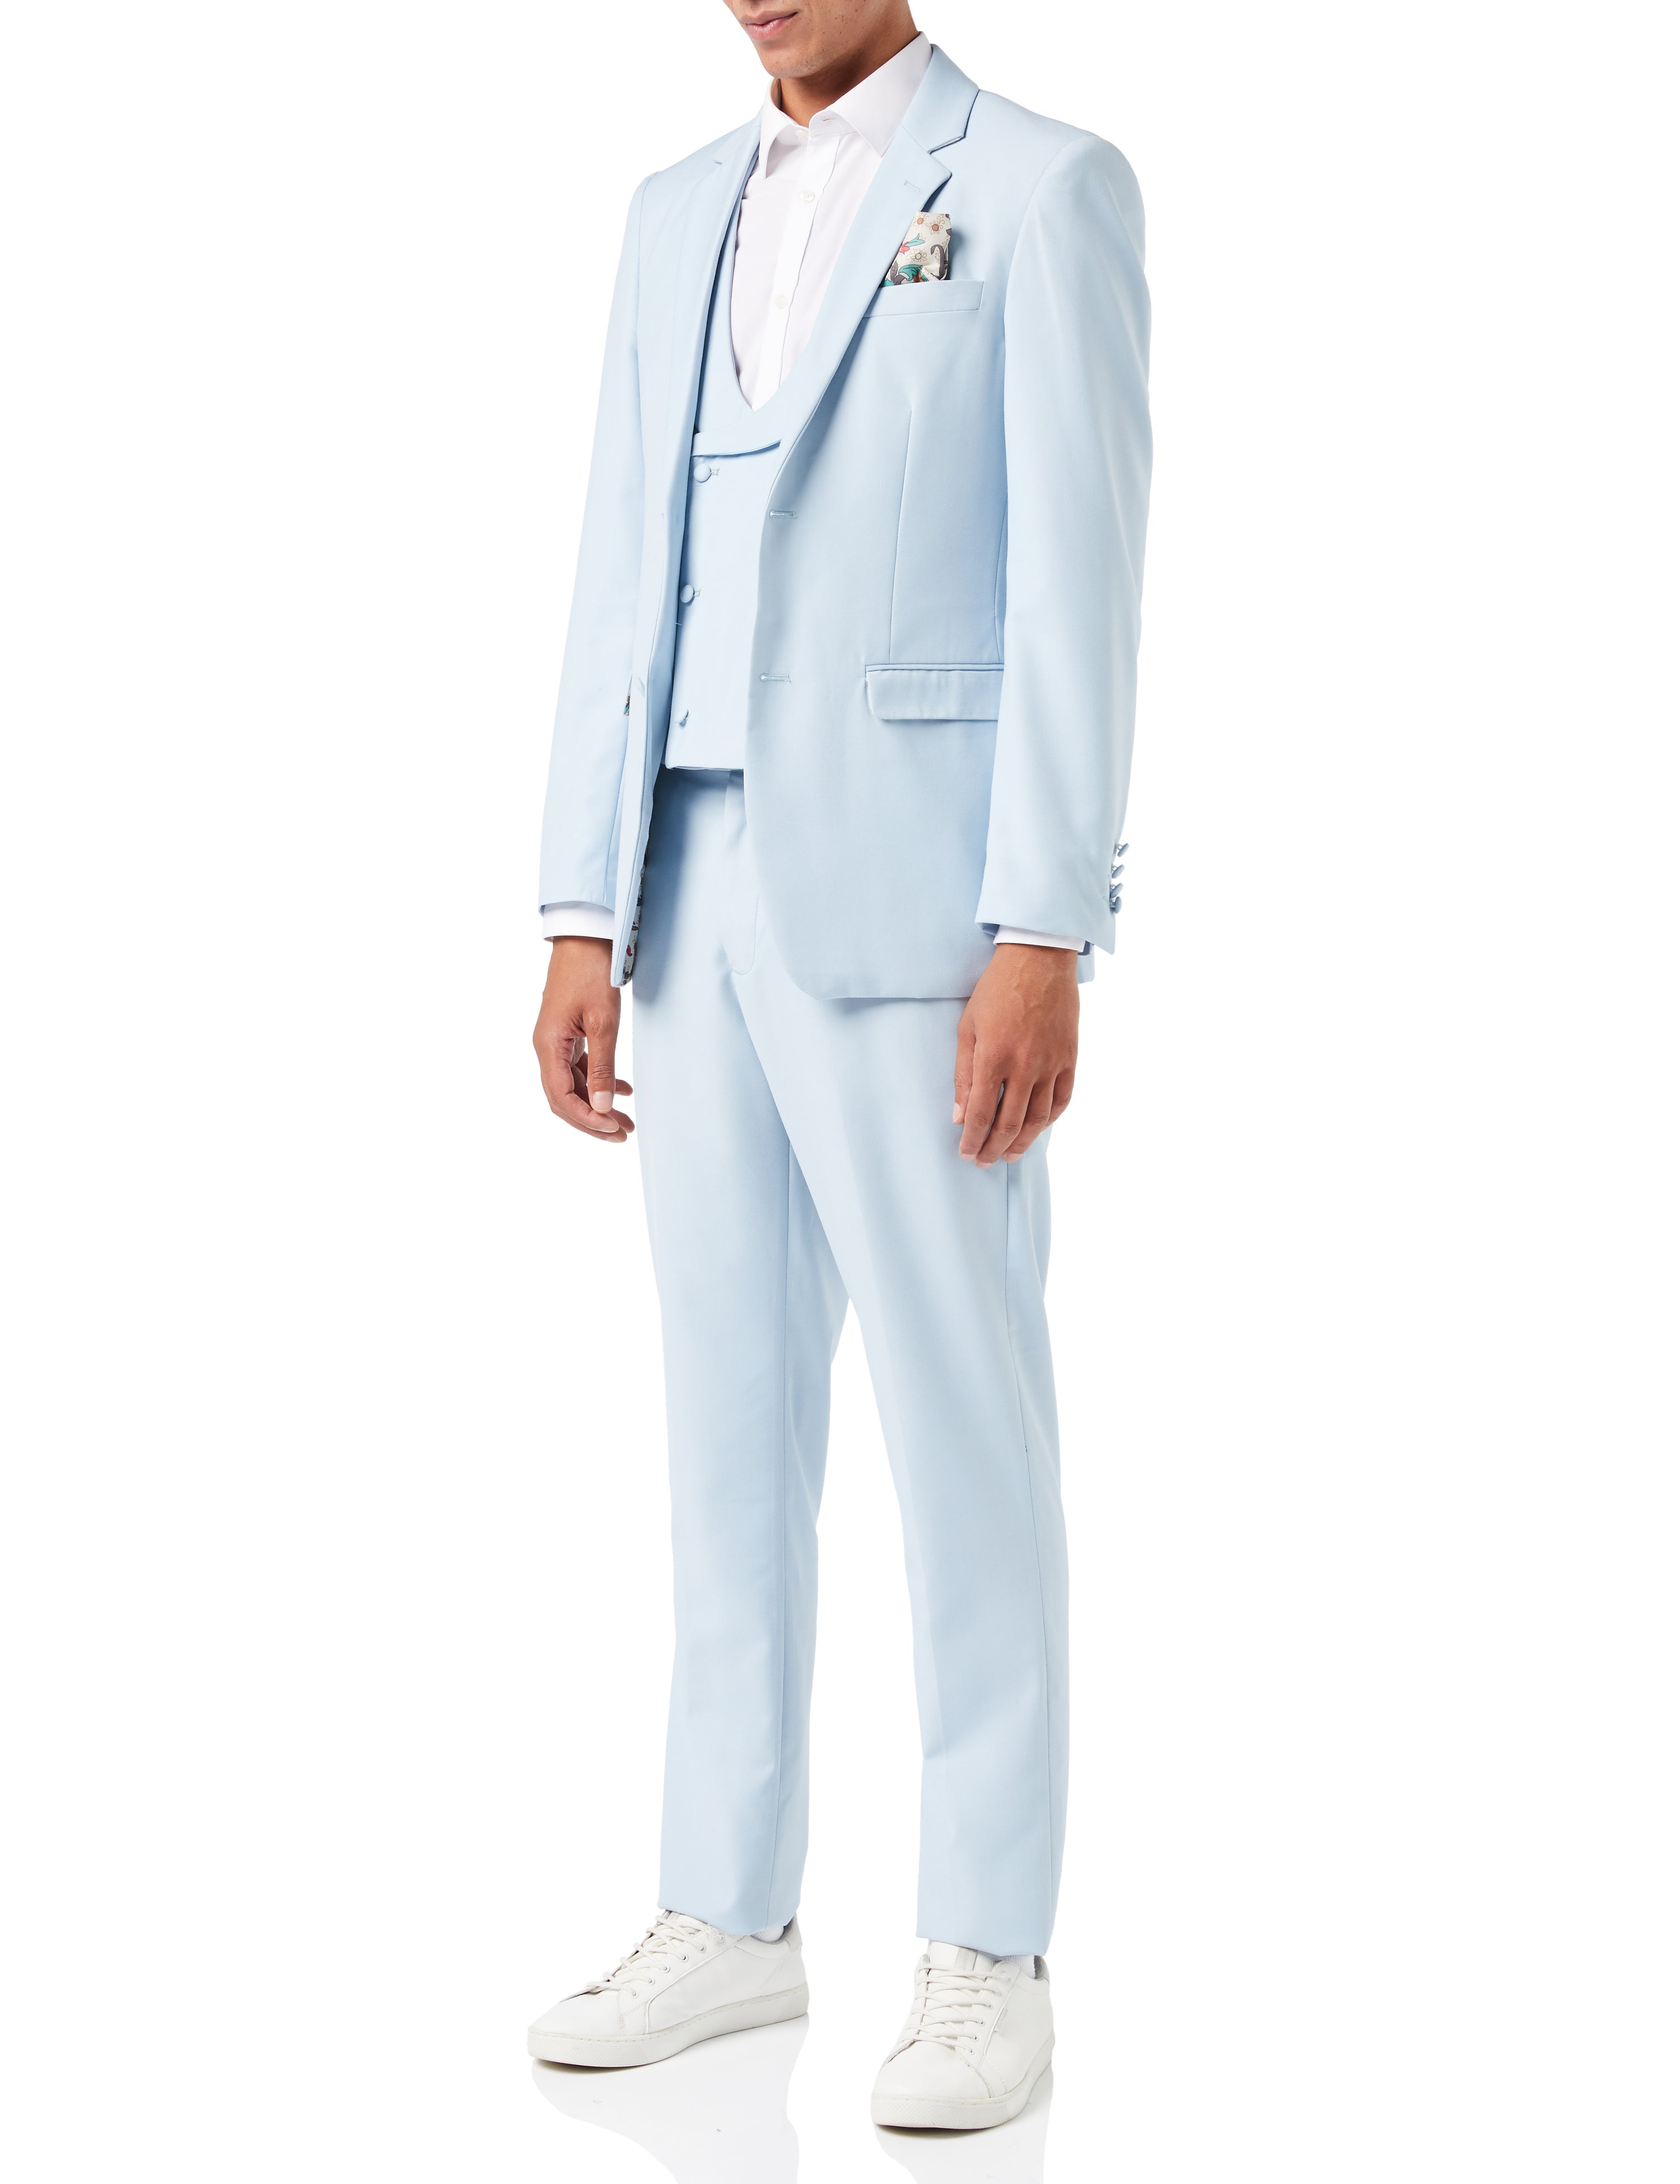 LETE - Pale Blue Summer Wedding Suit